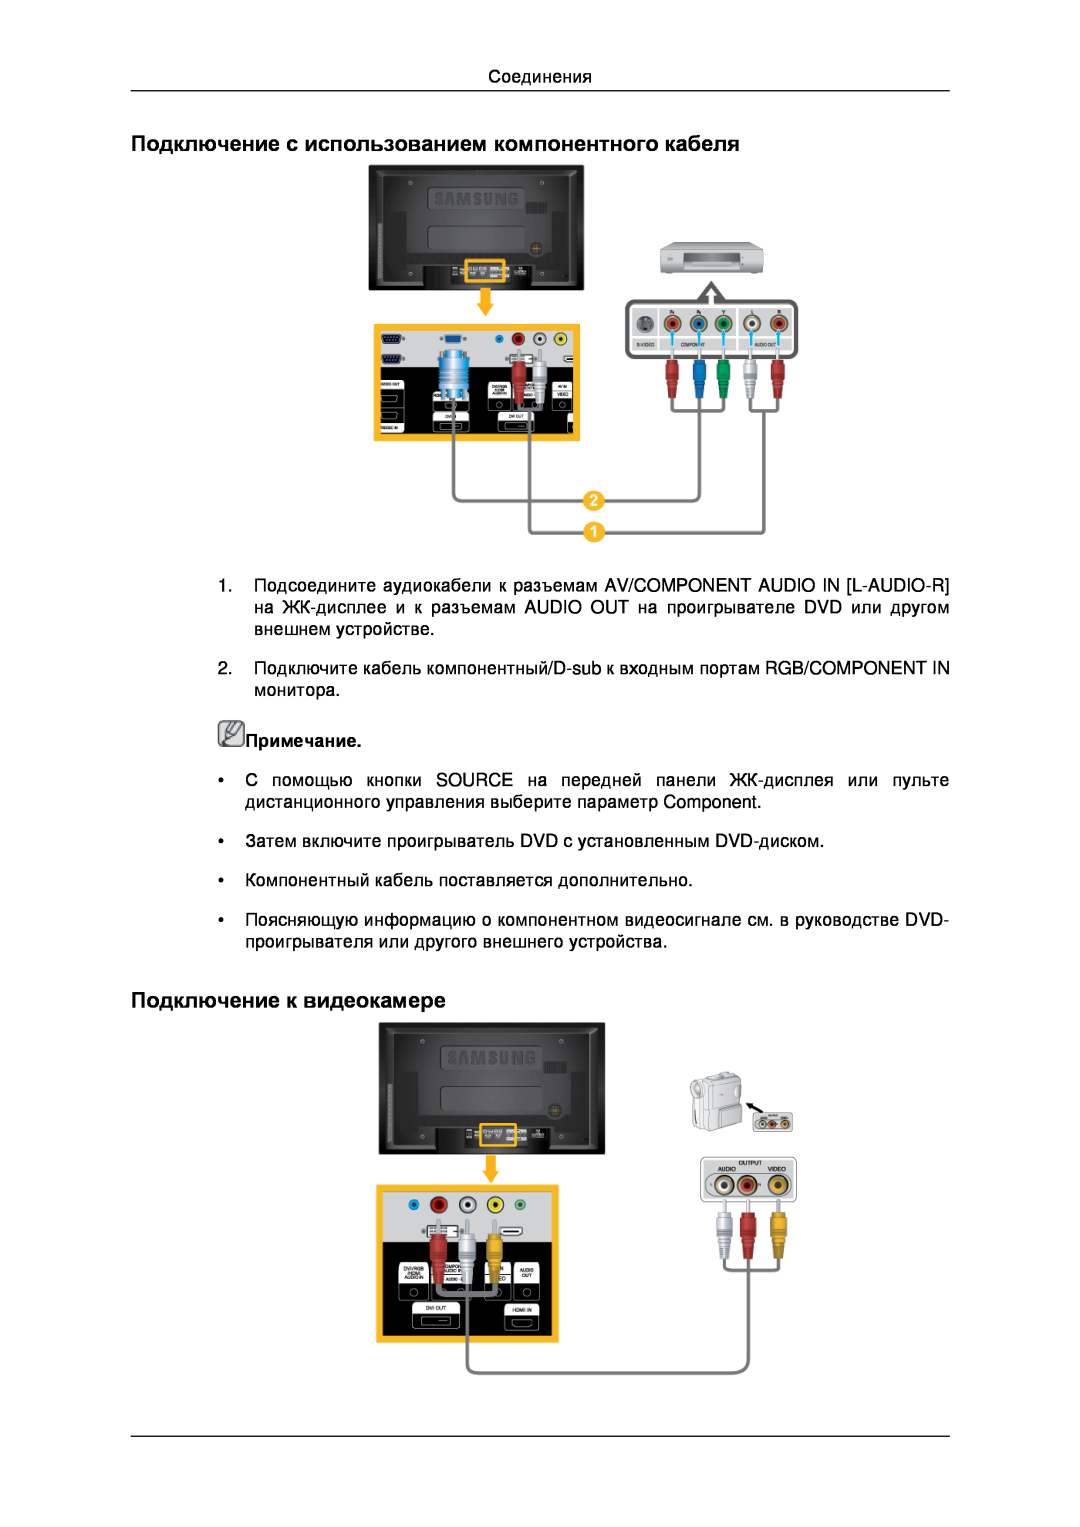 Samsung LH46MSTLBB/EN manual Подключение с использованием компонентного кабеля, Подключение к видеокамере, Примечание 